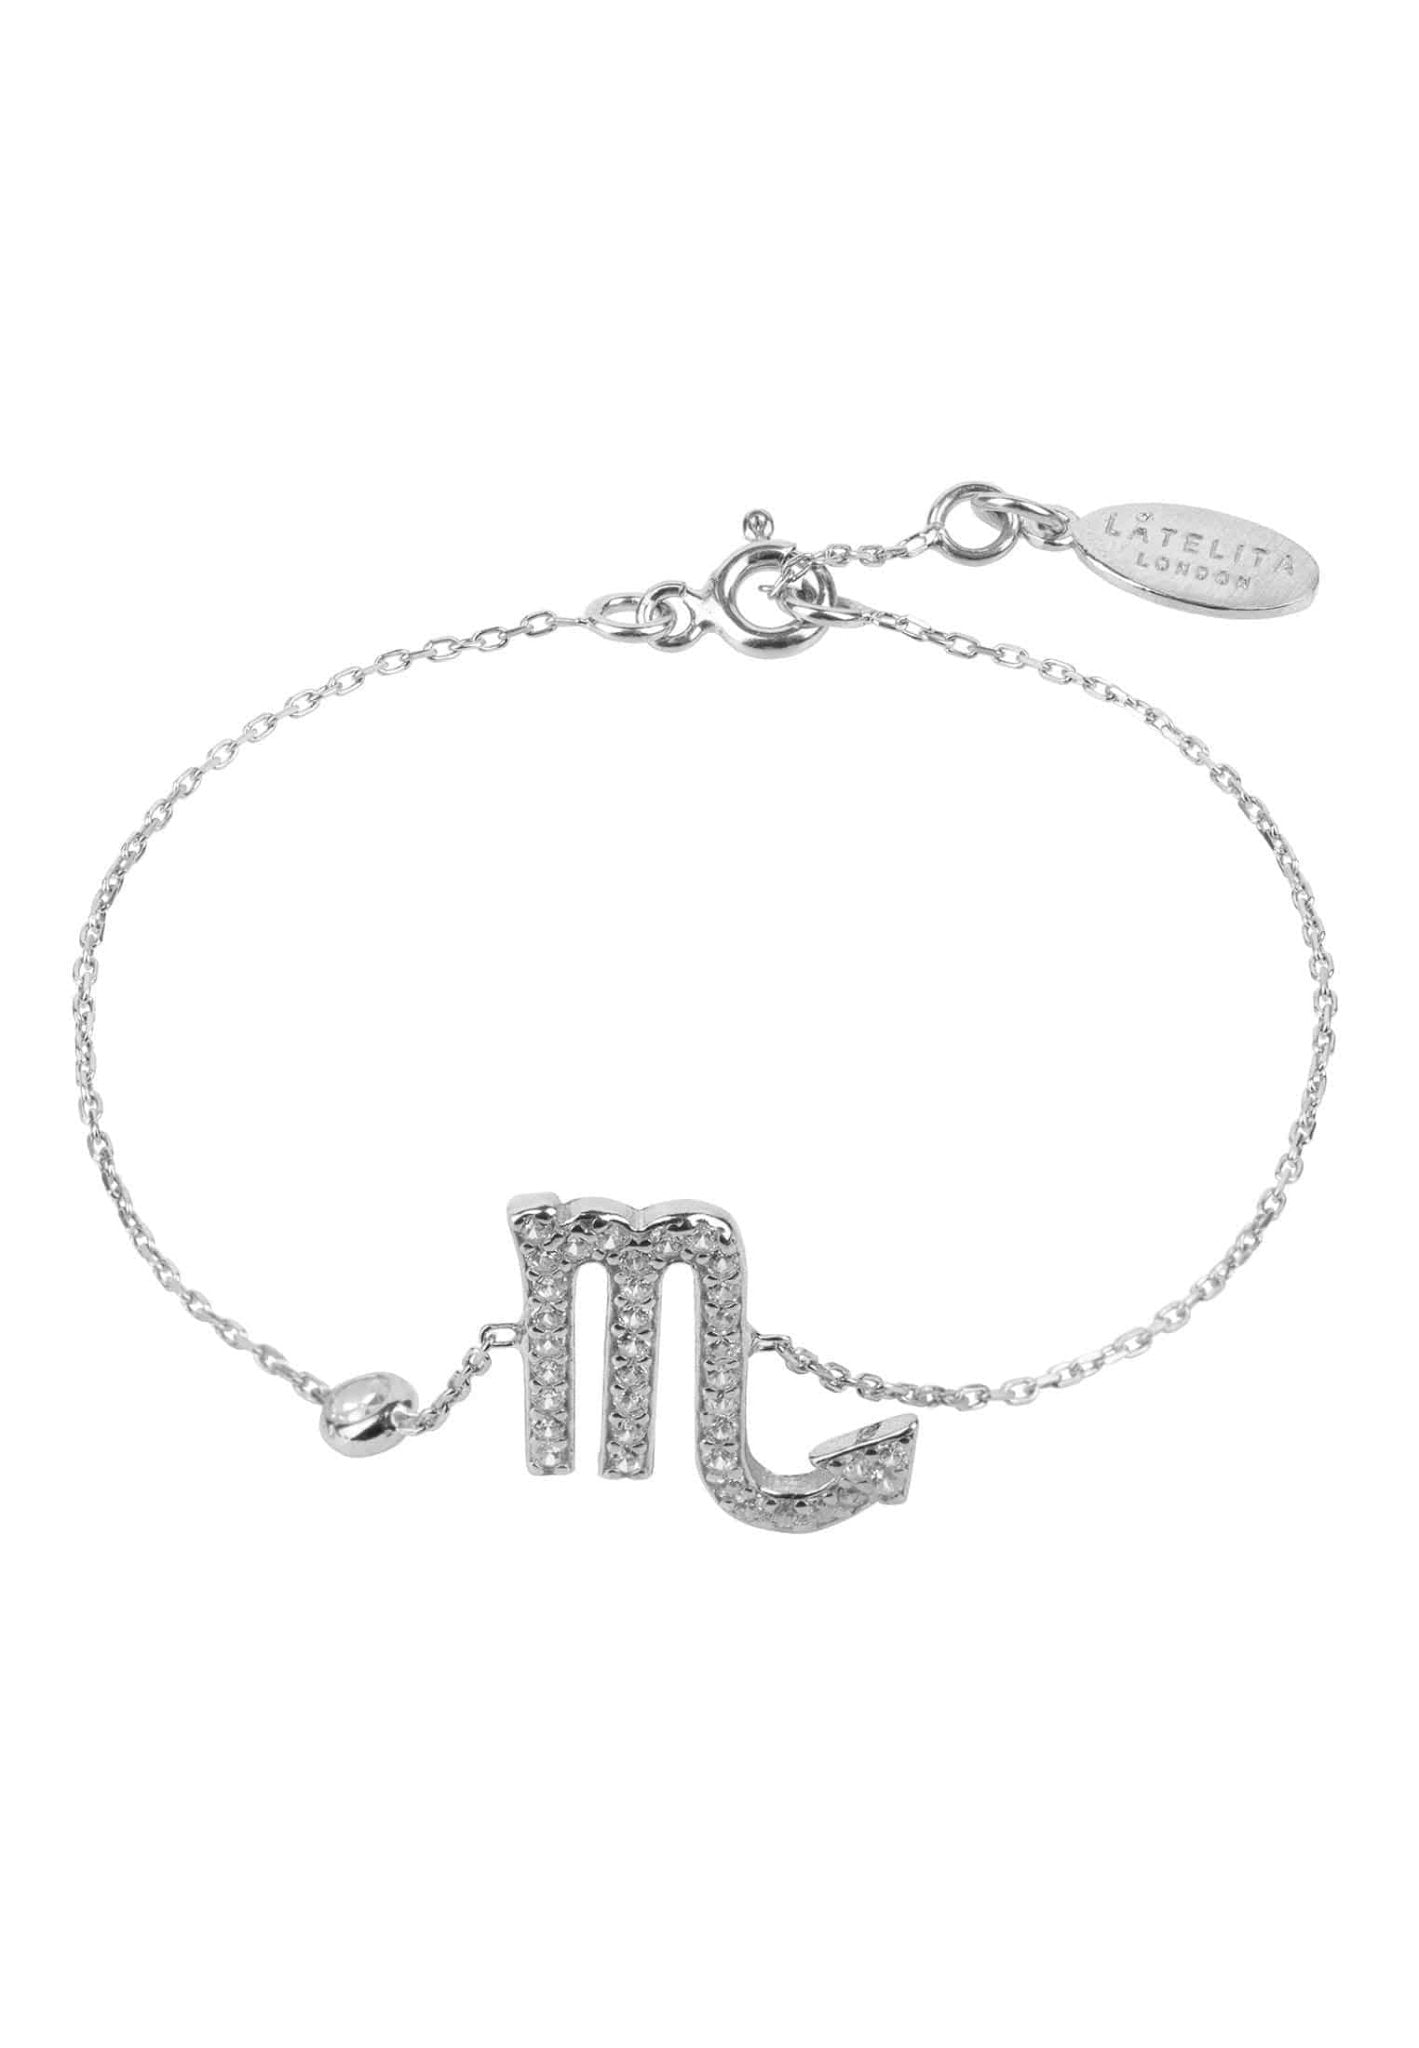 Personalized Bracelets - Zodiac Star Sign Bracelet Scorpio 